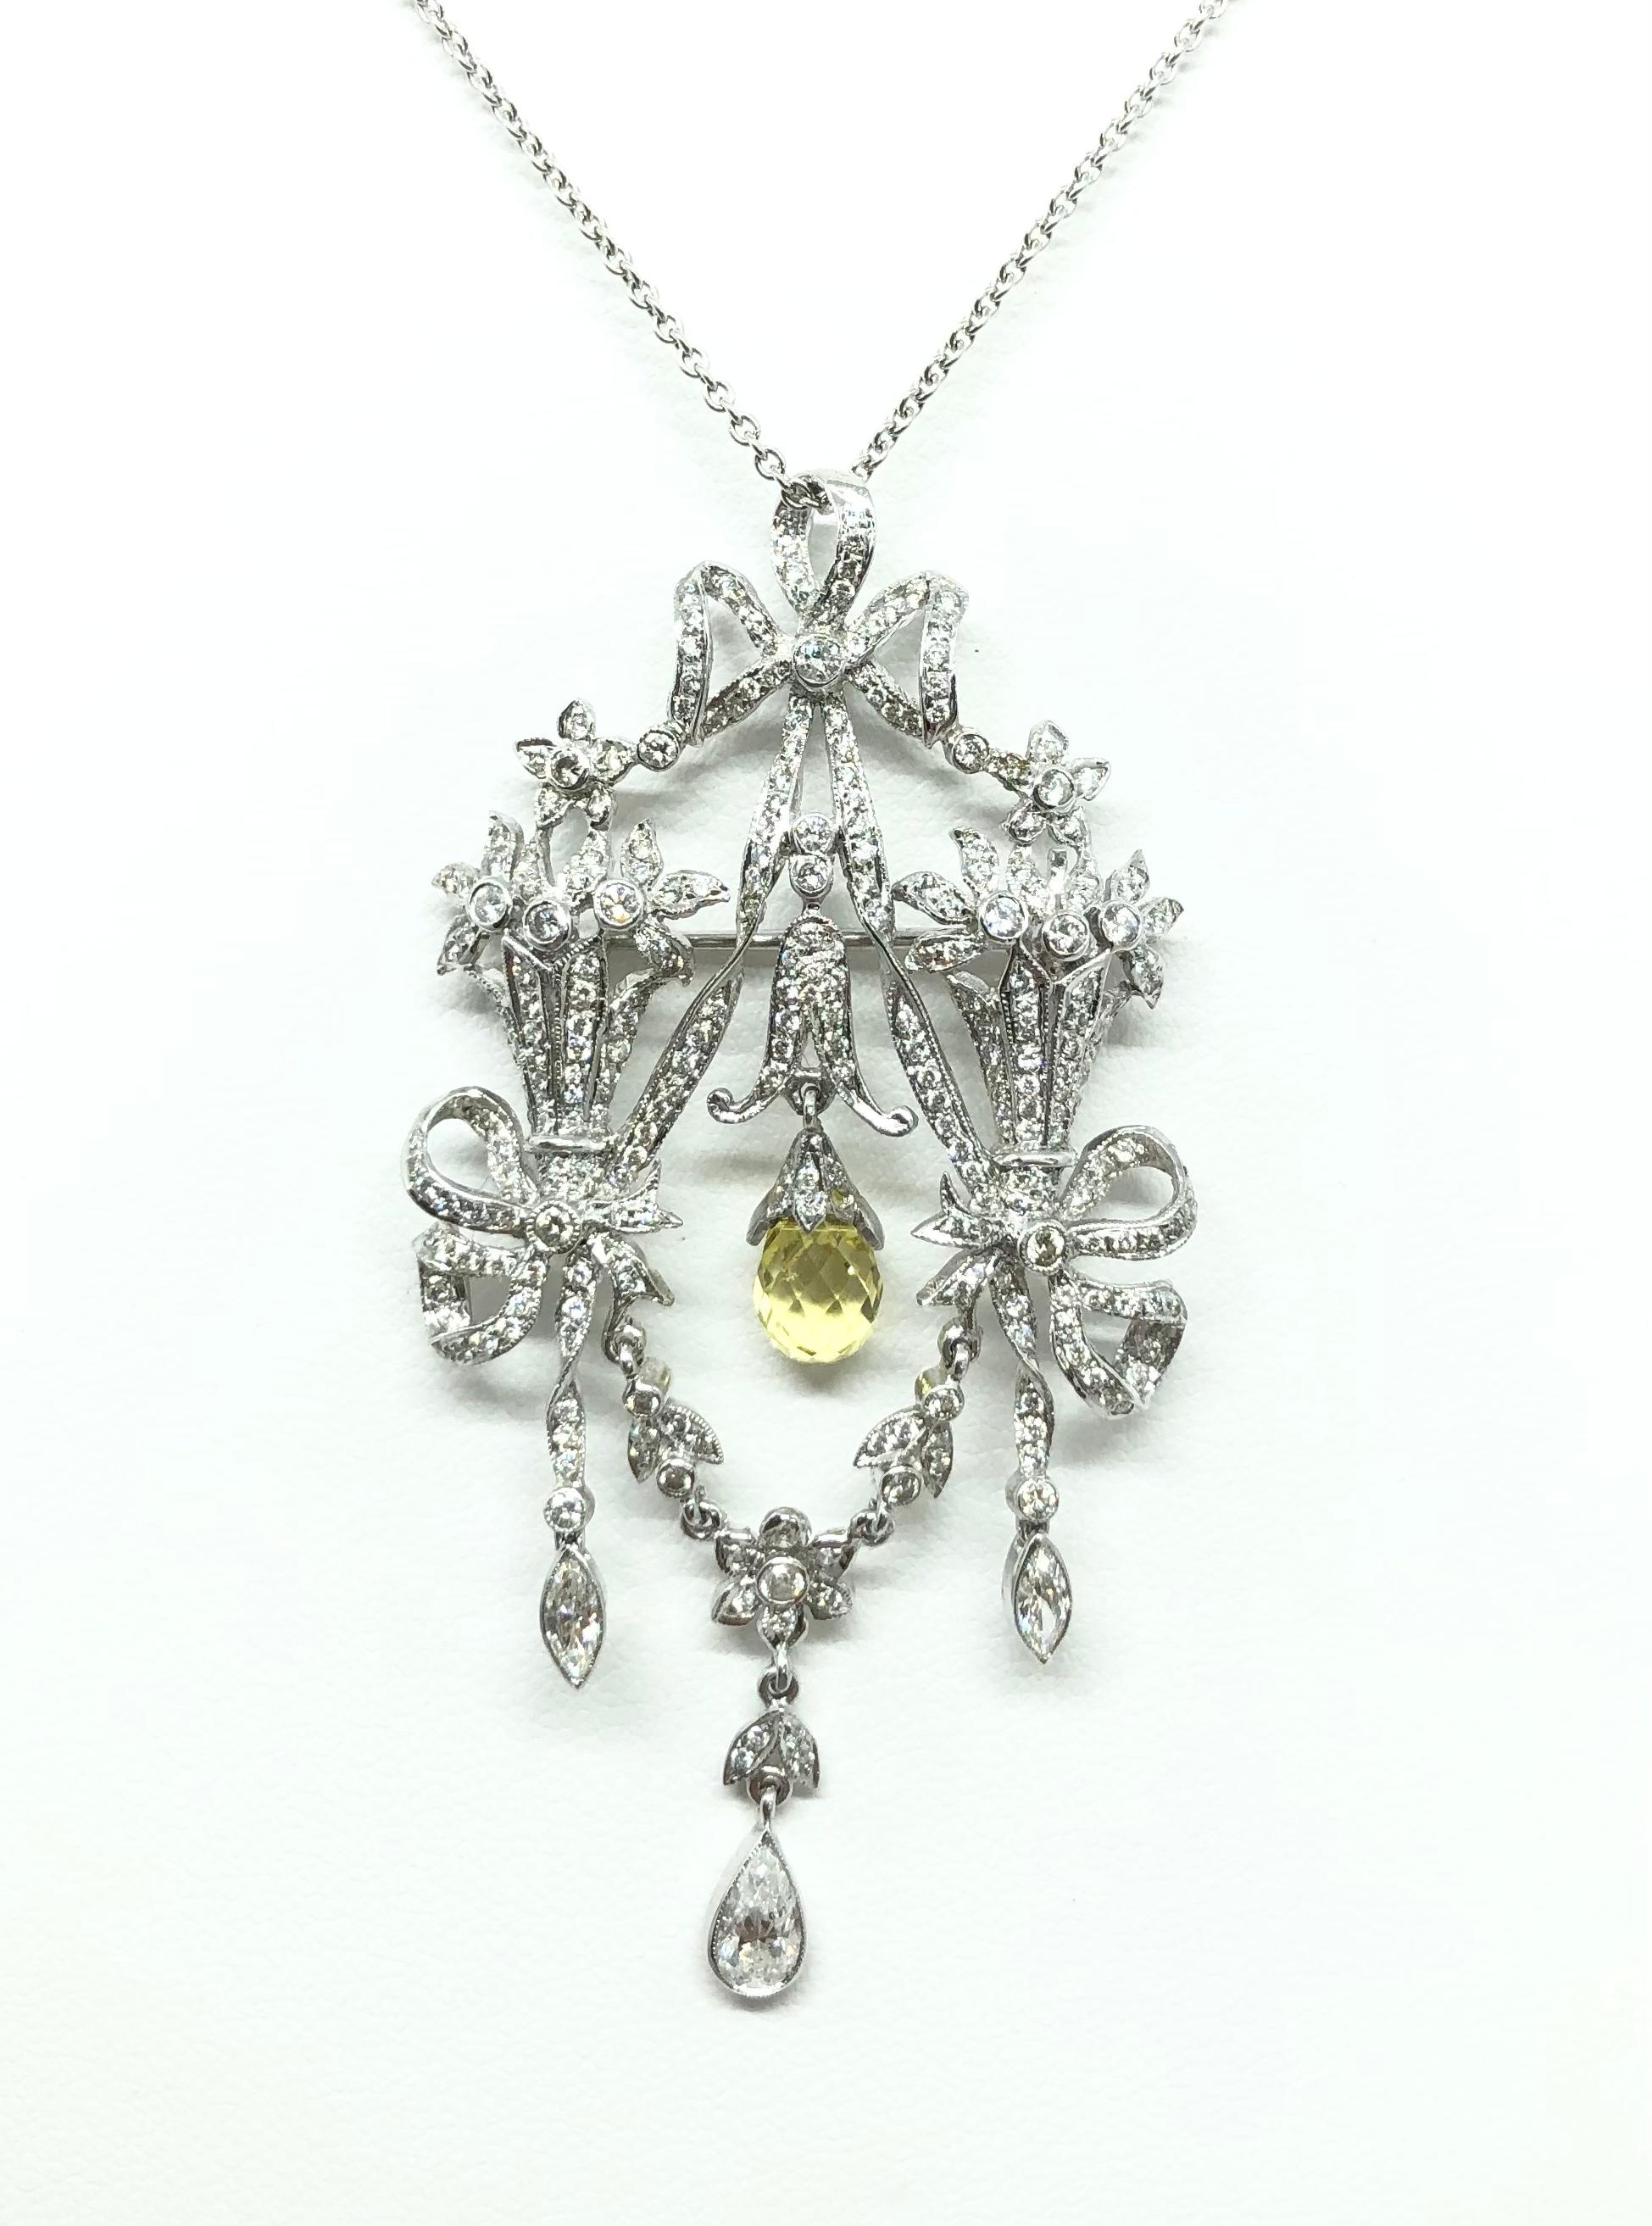 Diamant 1,28 Karat mit gelbem Saphir 1,78 Karat Brosche/Anhänger in 18 Karat Weißgold gefasst
(Kette nicht enthalten)

Breite: 3.2 cm 
Länge: 6,0 cm
Gesamtgewicht: 9,59 Gramm

